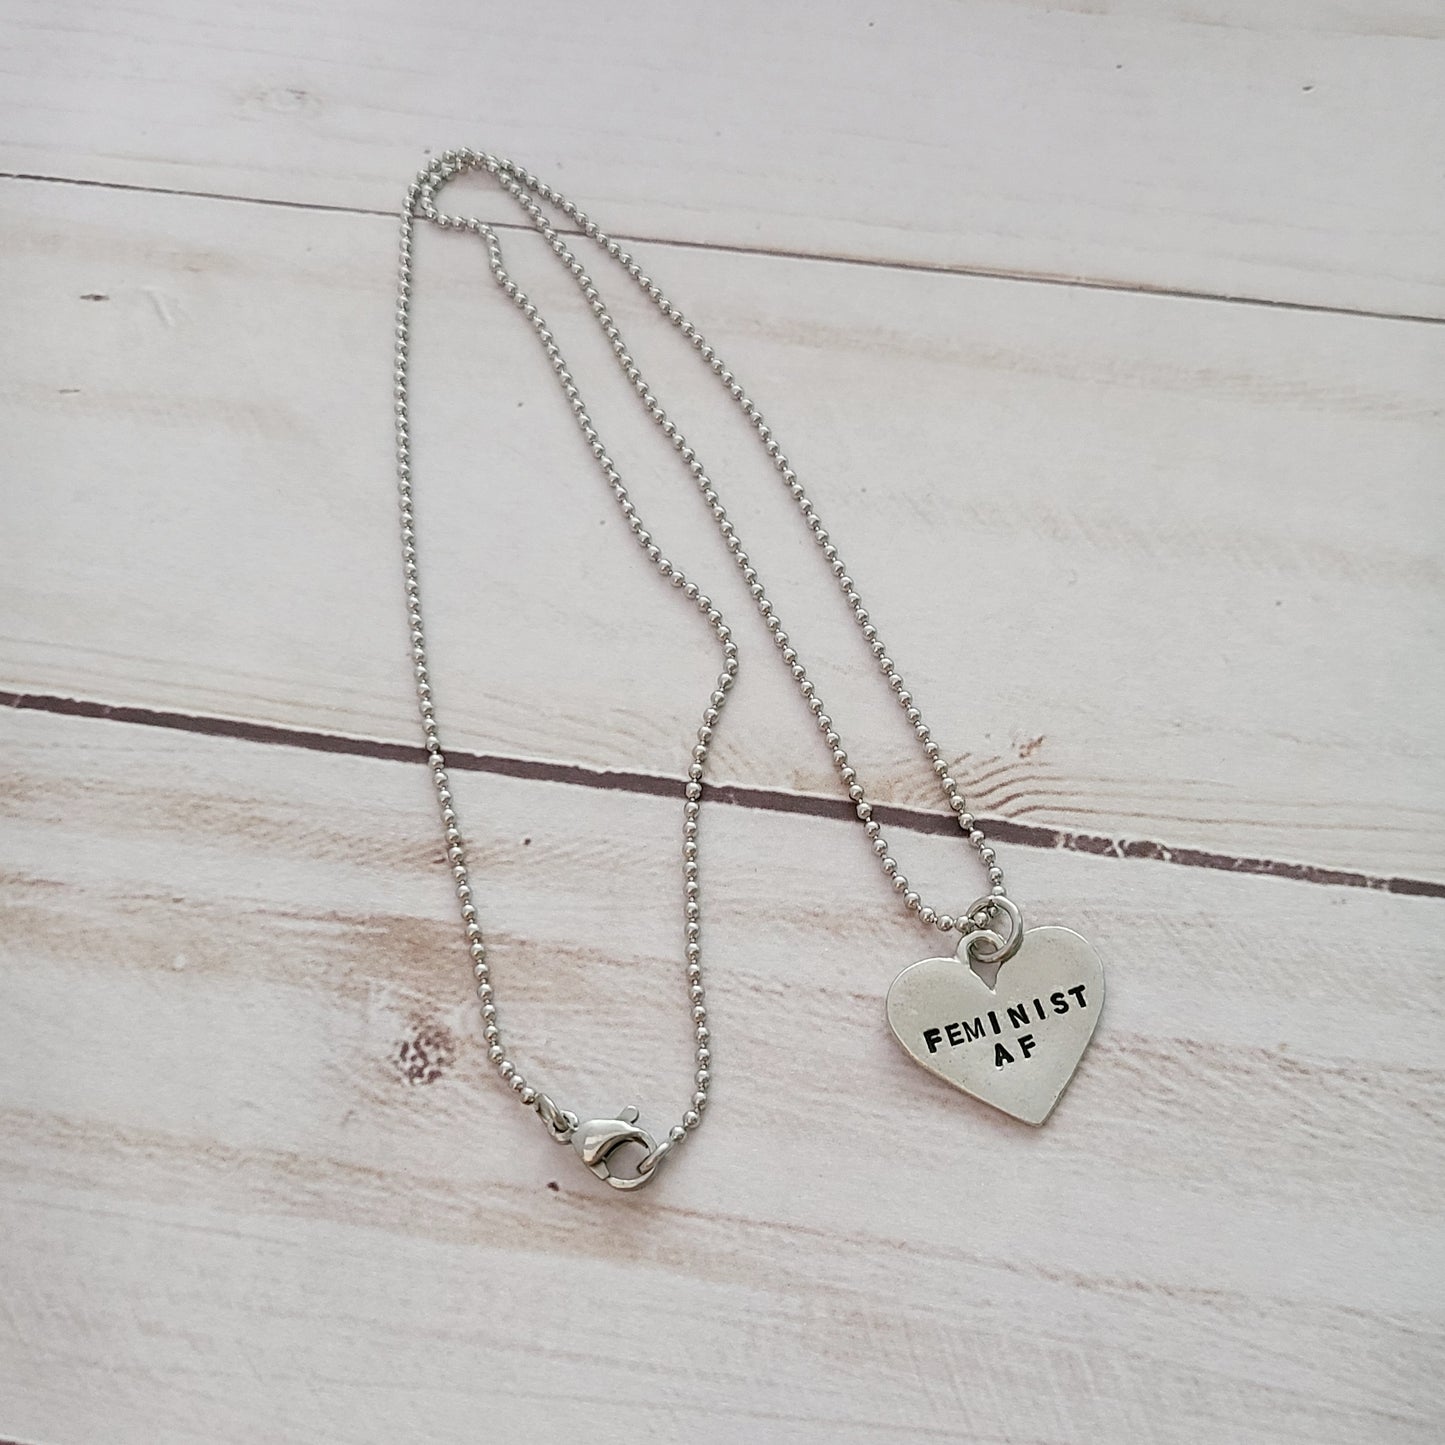 Feminist AF - Heart Shaped Necklace